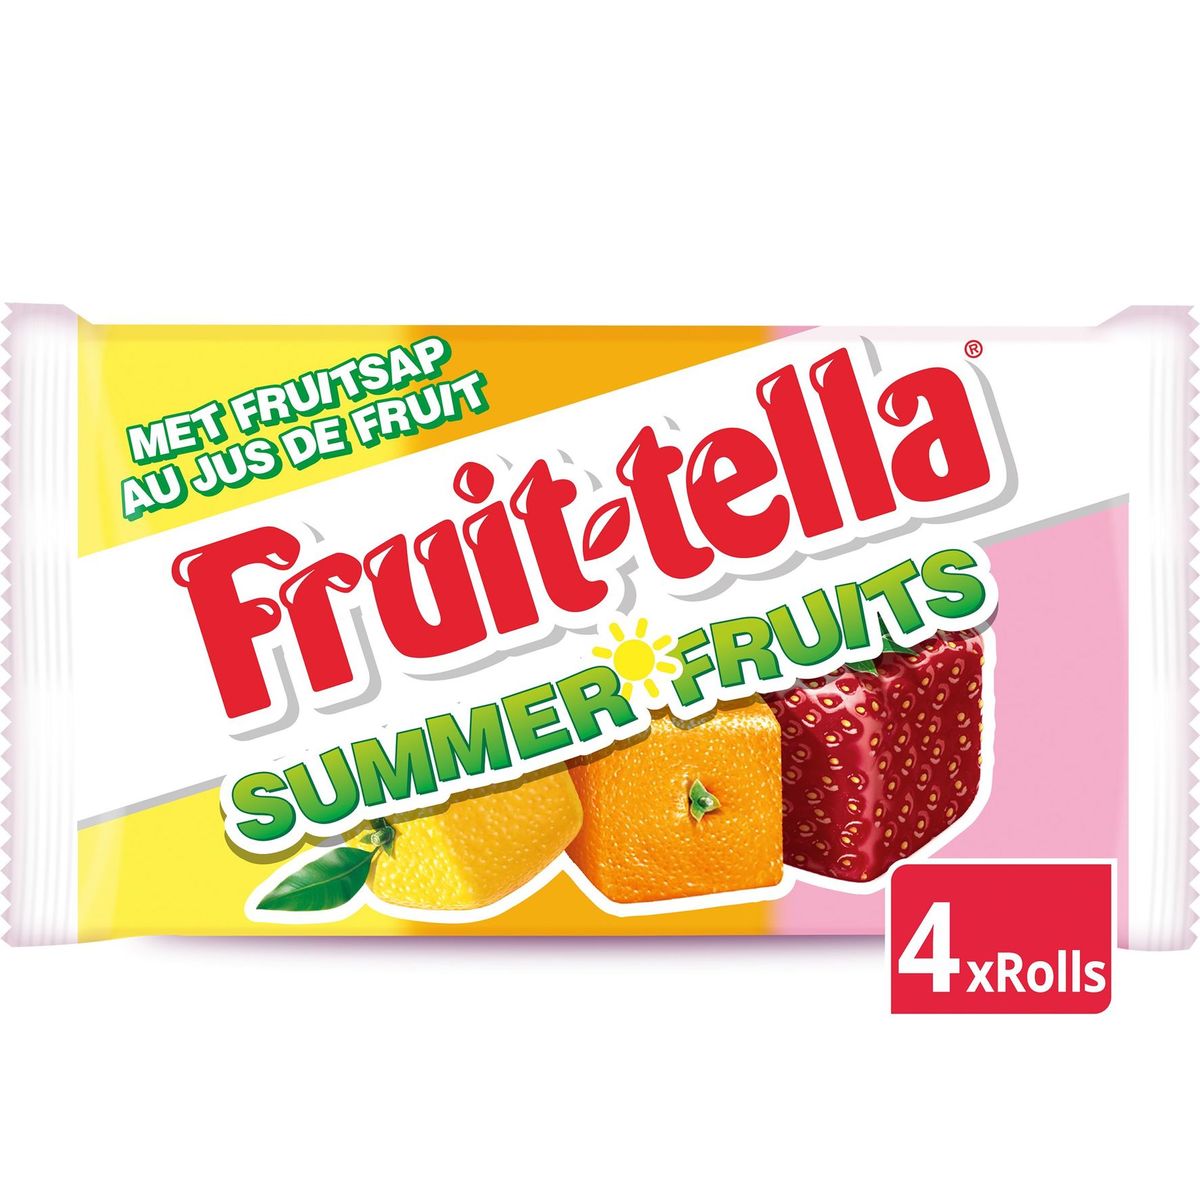 Fruittella Summer Fruits 4 x 41 g